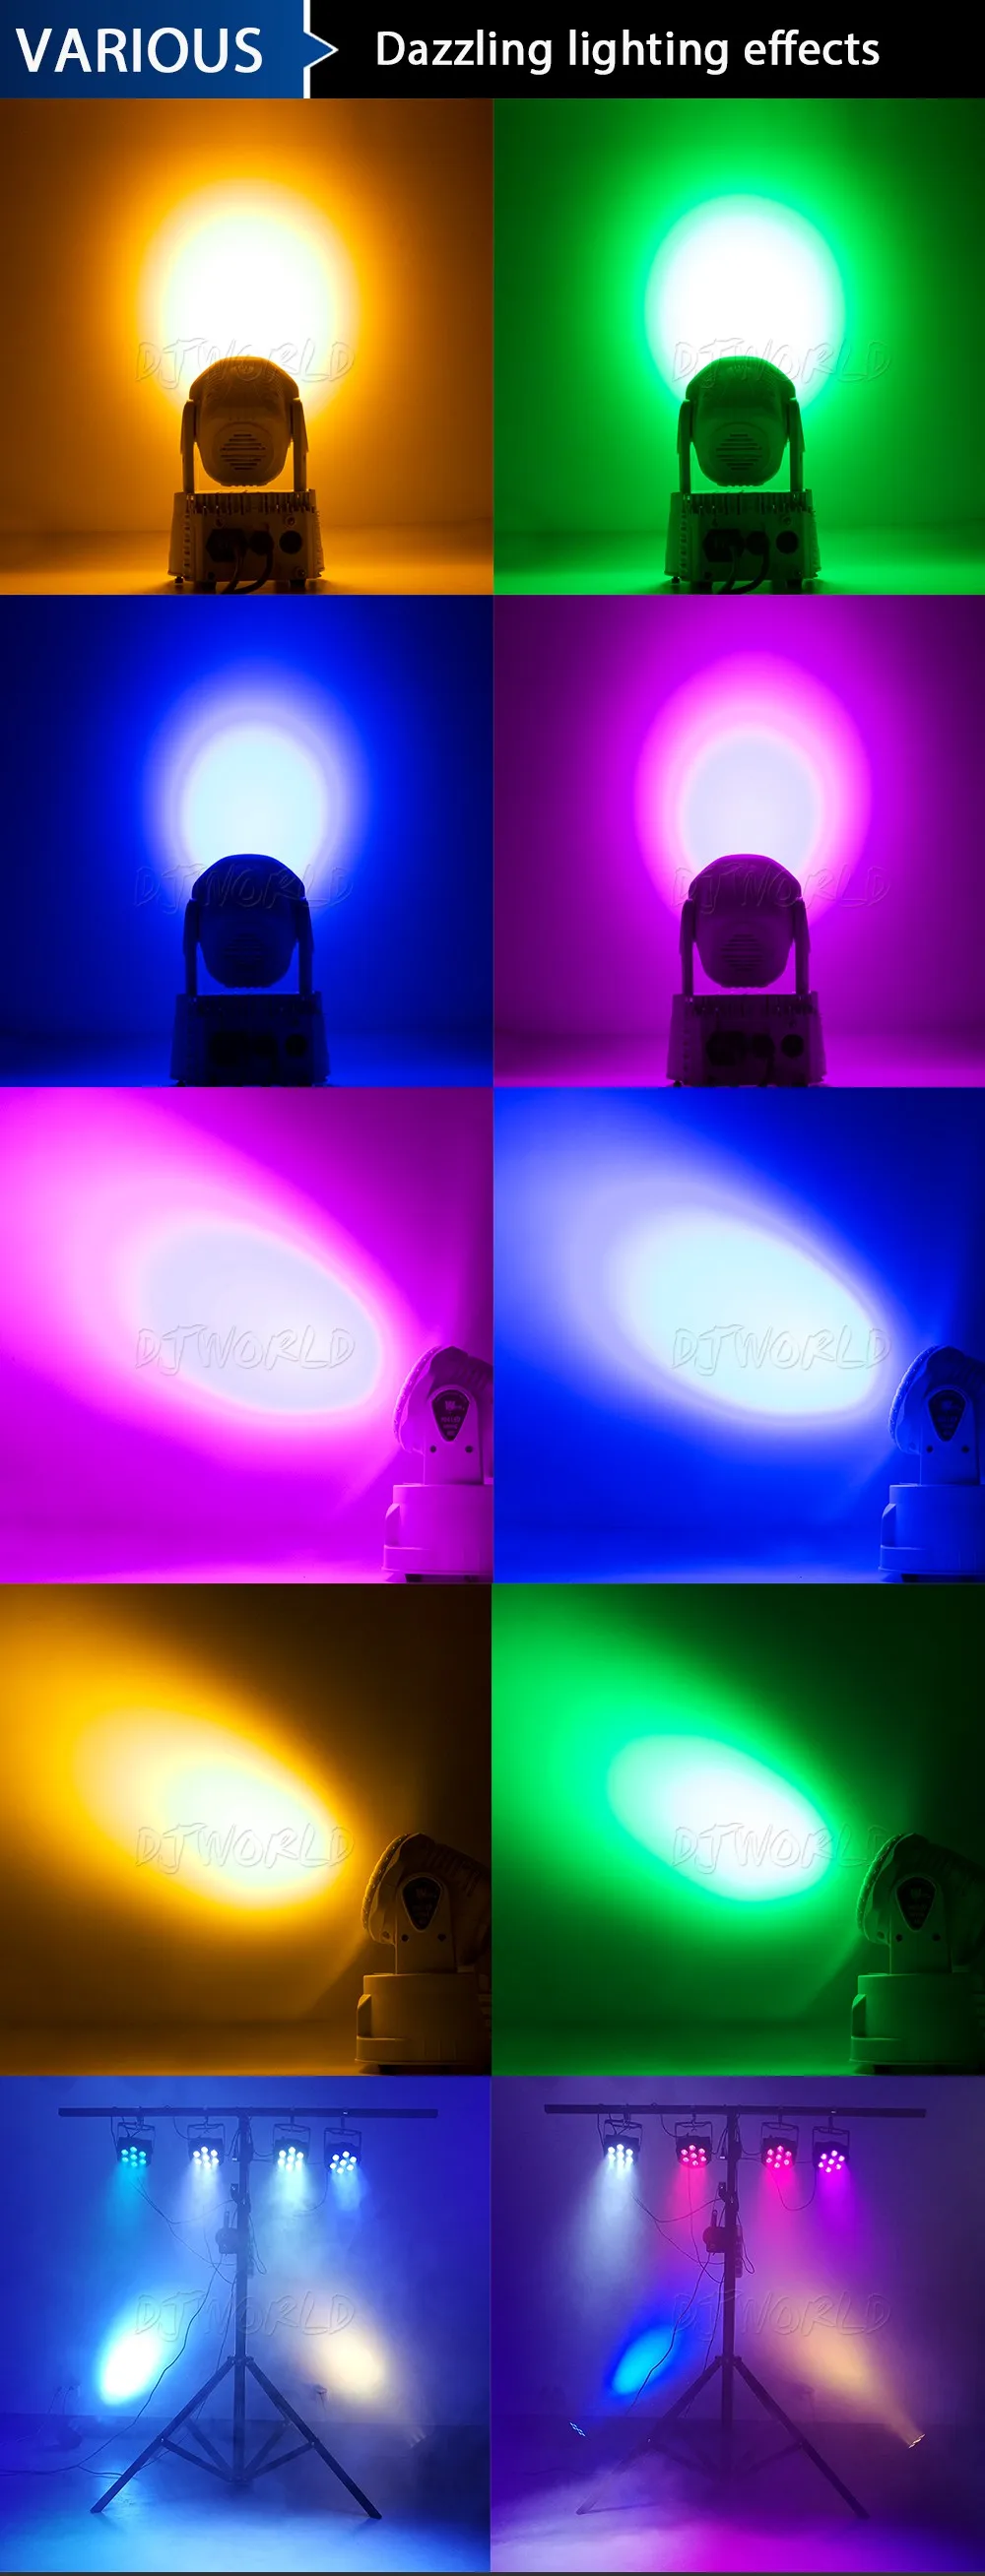 Djworld светодиодный светильник 7X18 Вт RGBWA+ UV 6в1 сценический светильник с подвижной головкой DMX сценический светильник DJ ночной клуб вечерние концертный сценический профессиональный